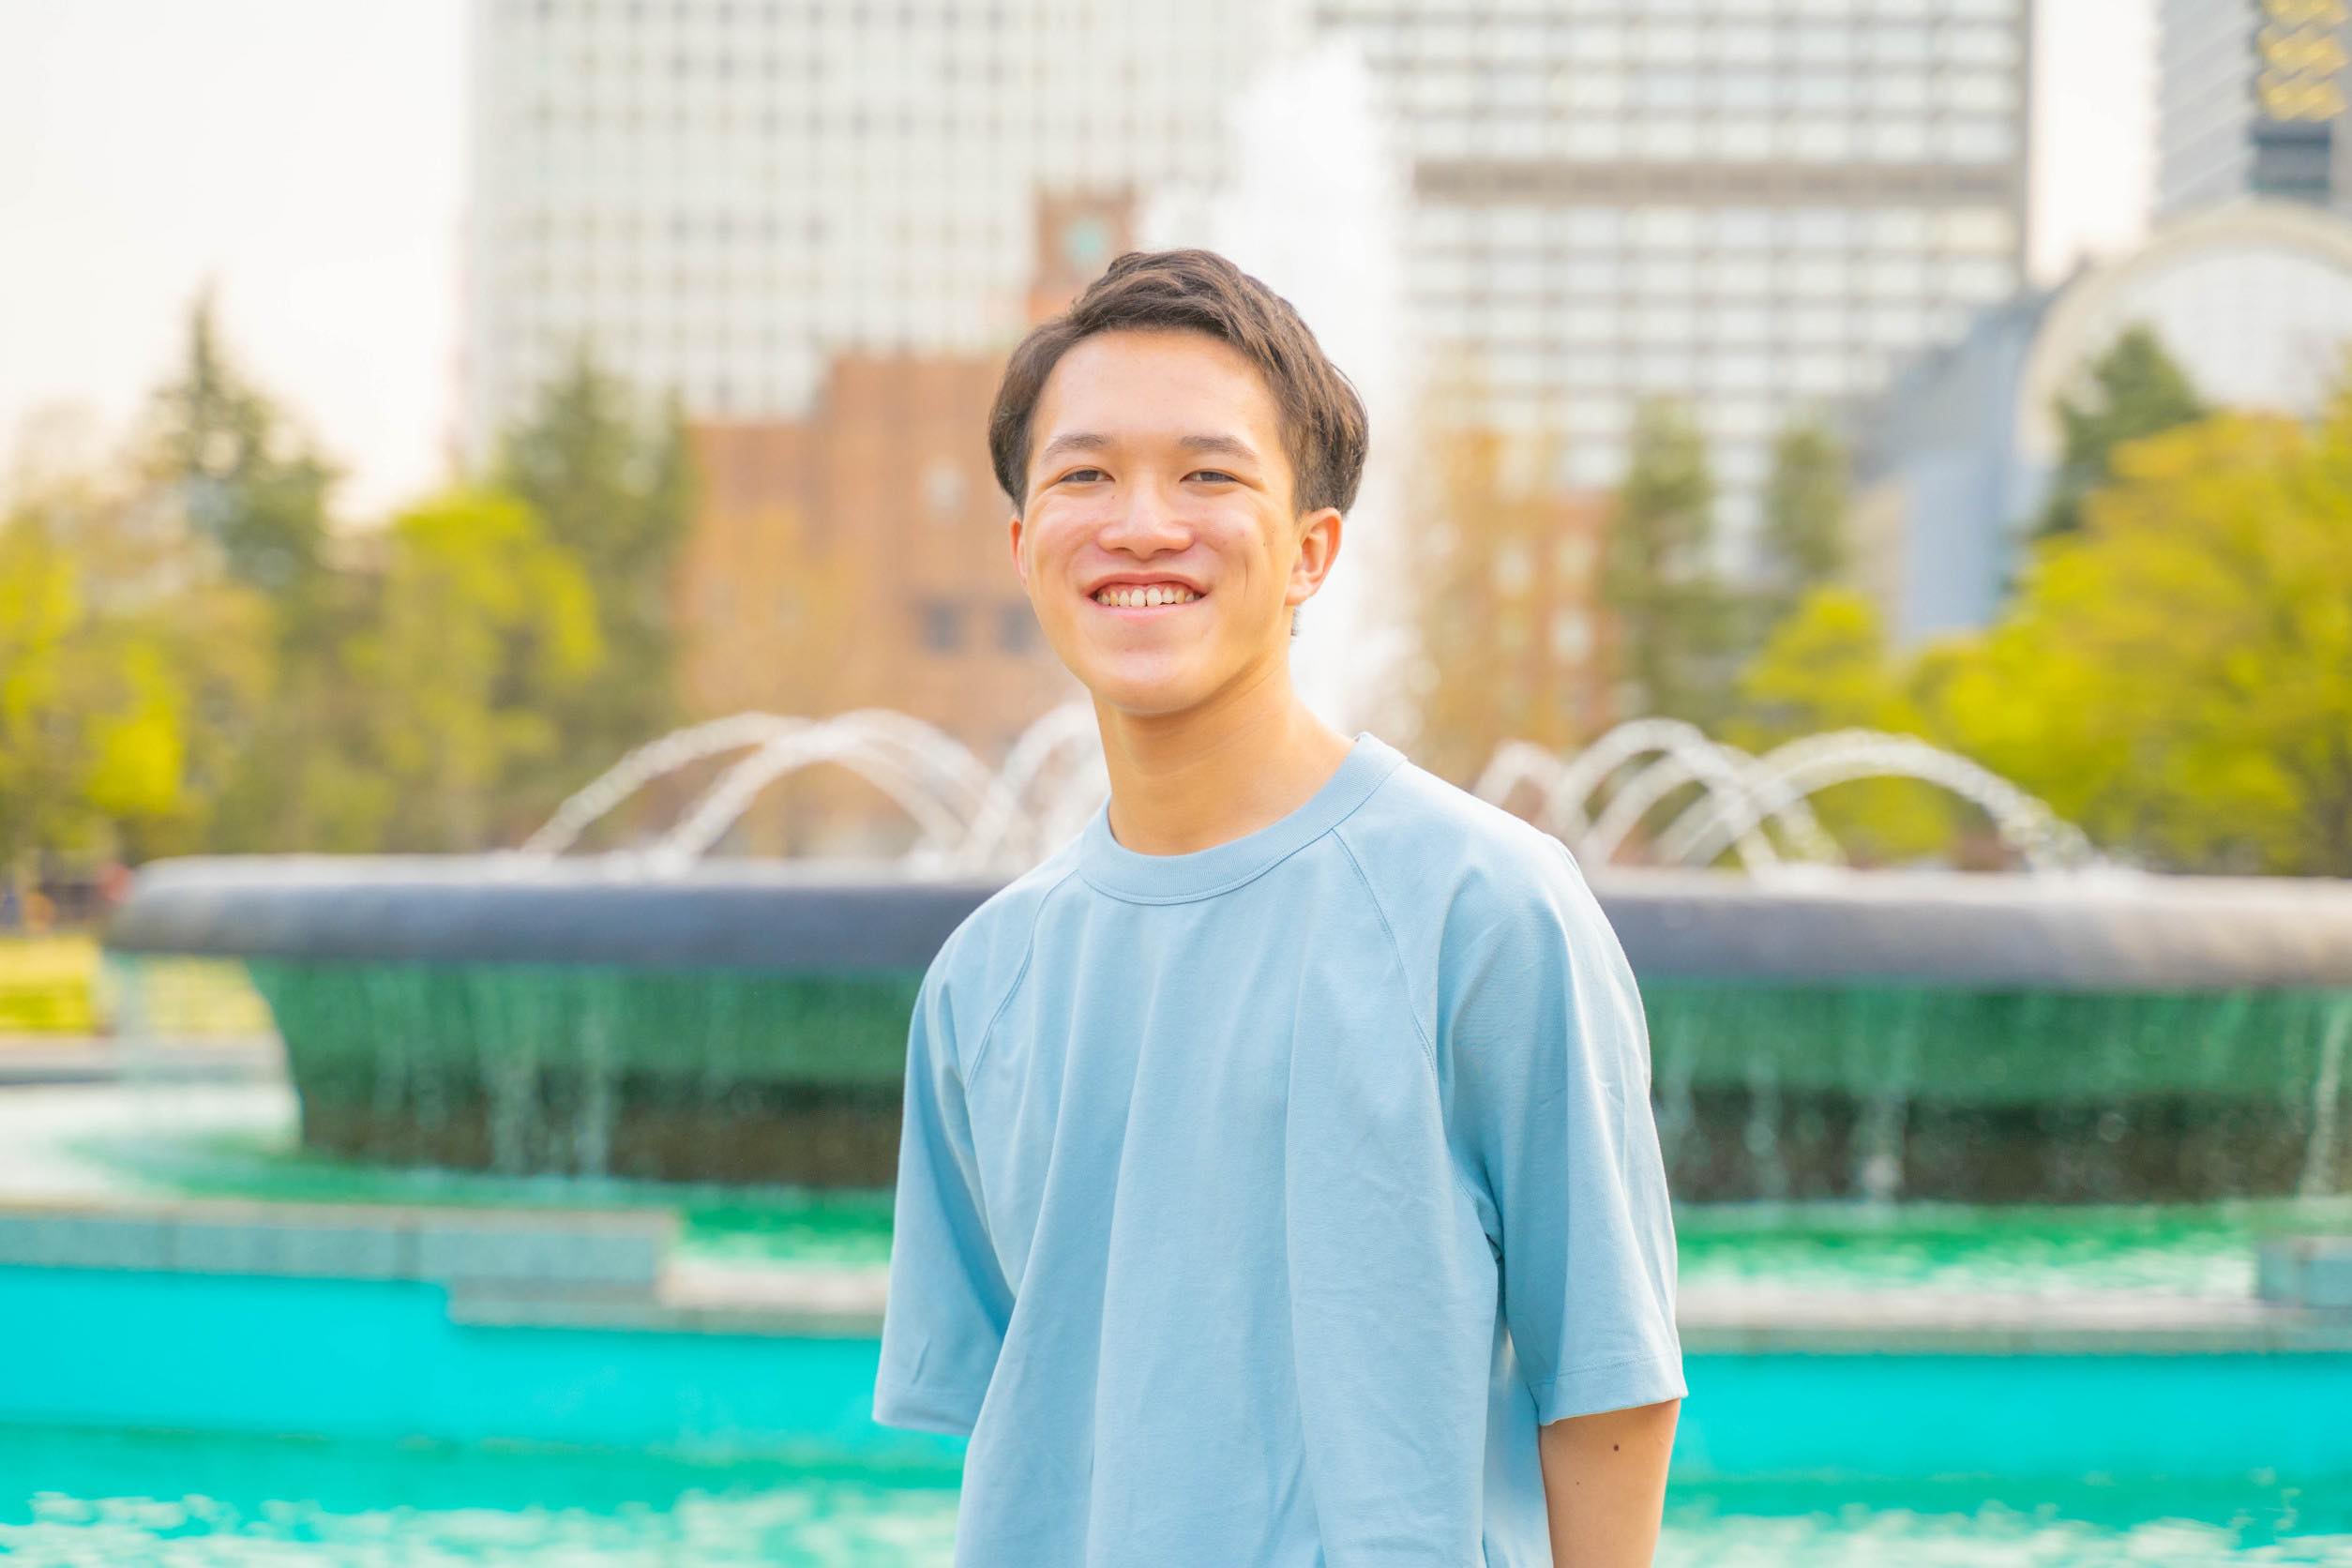 【探究入試Spiral合格者インタビュー】18歳の起業家 竹琉(たける)